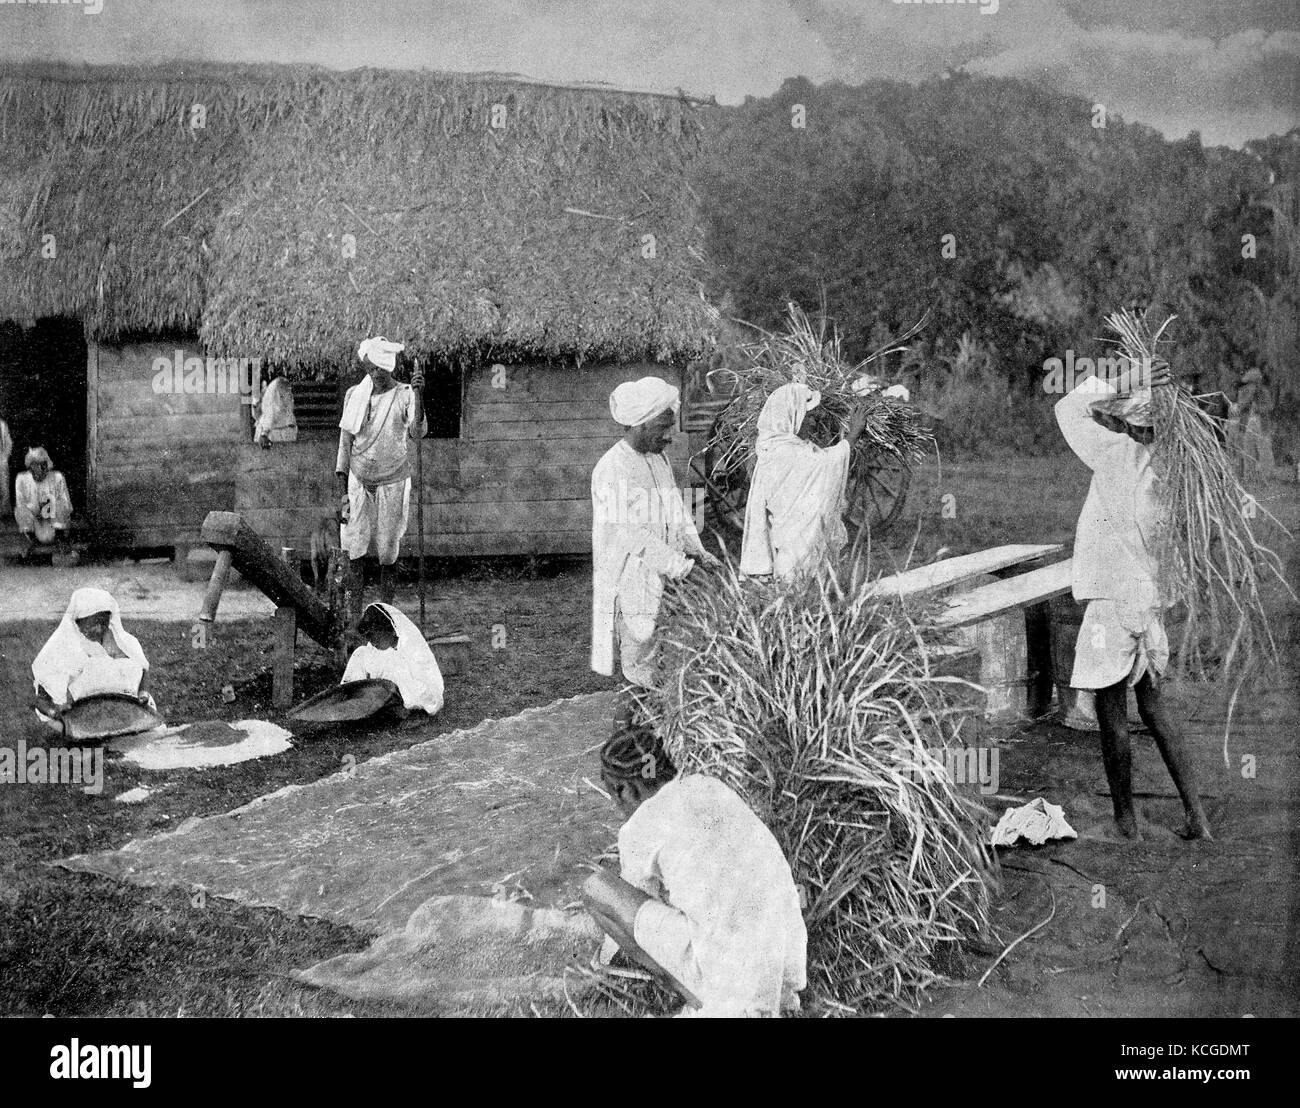 Kulis oder Kulis, sind Leiharbeiter oder Tagelöhner bei der Reisernte in Jamaika, digital verbesserte Reproduktion einer historischen Foto aus dem (geschätzten) Jahr 1899 Stockfoto